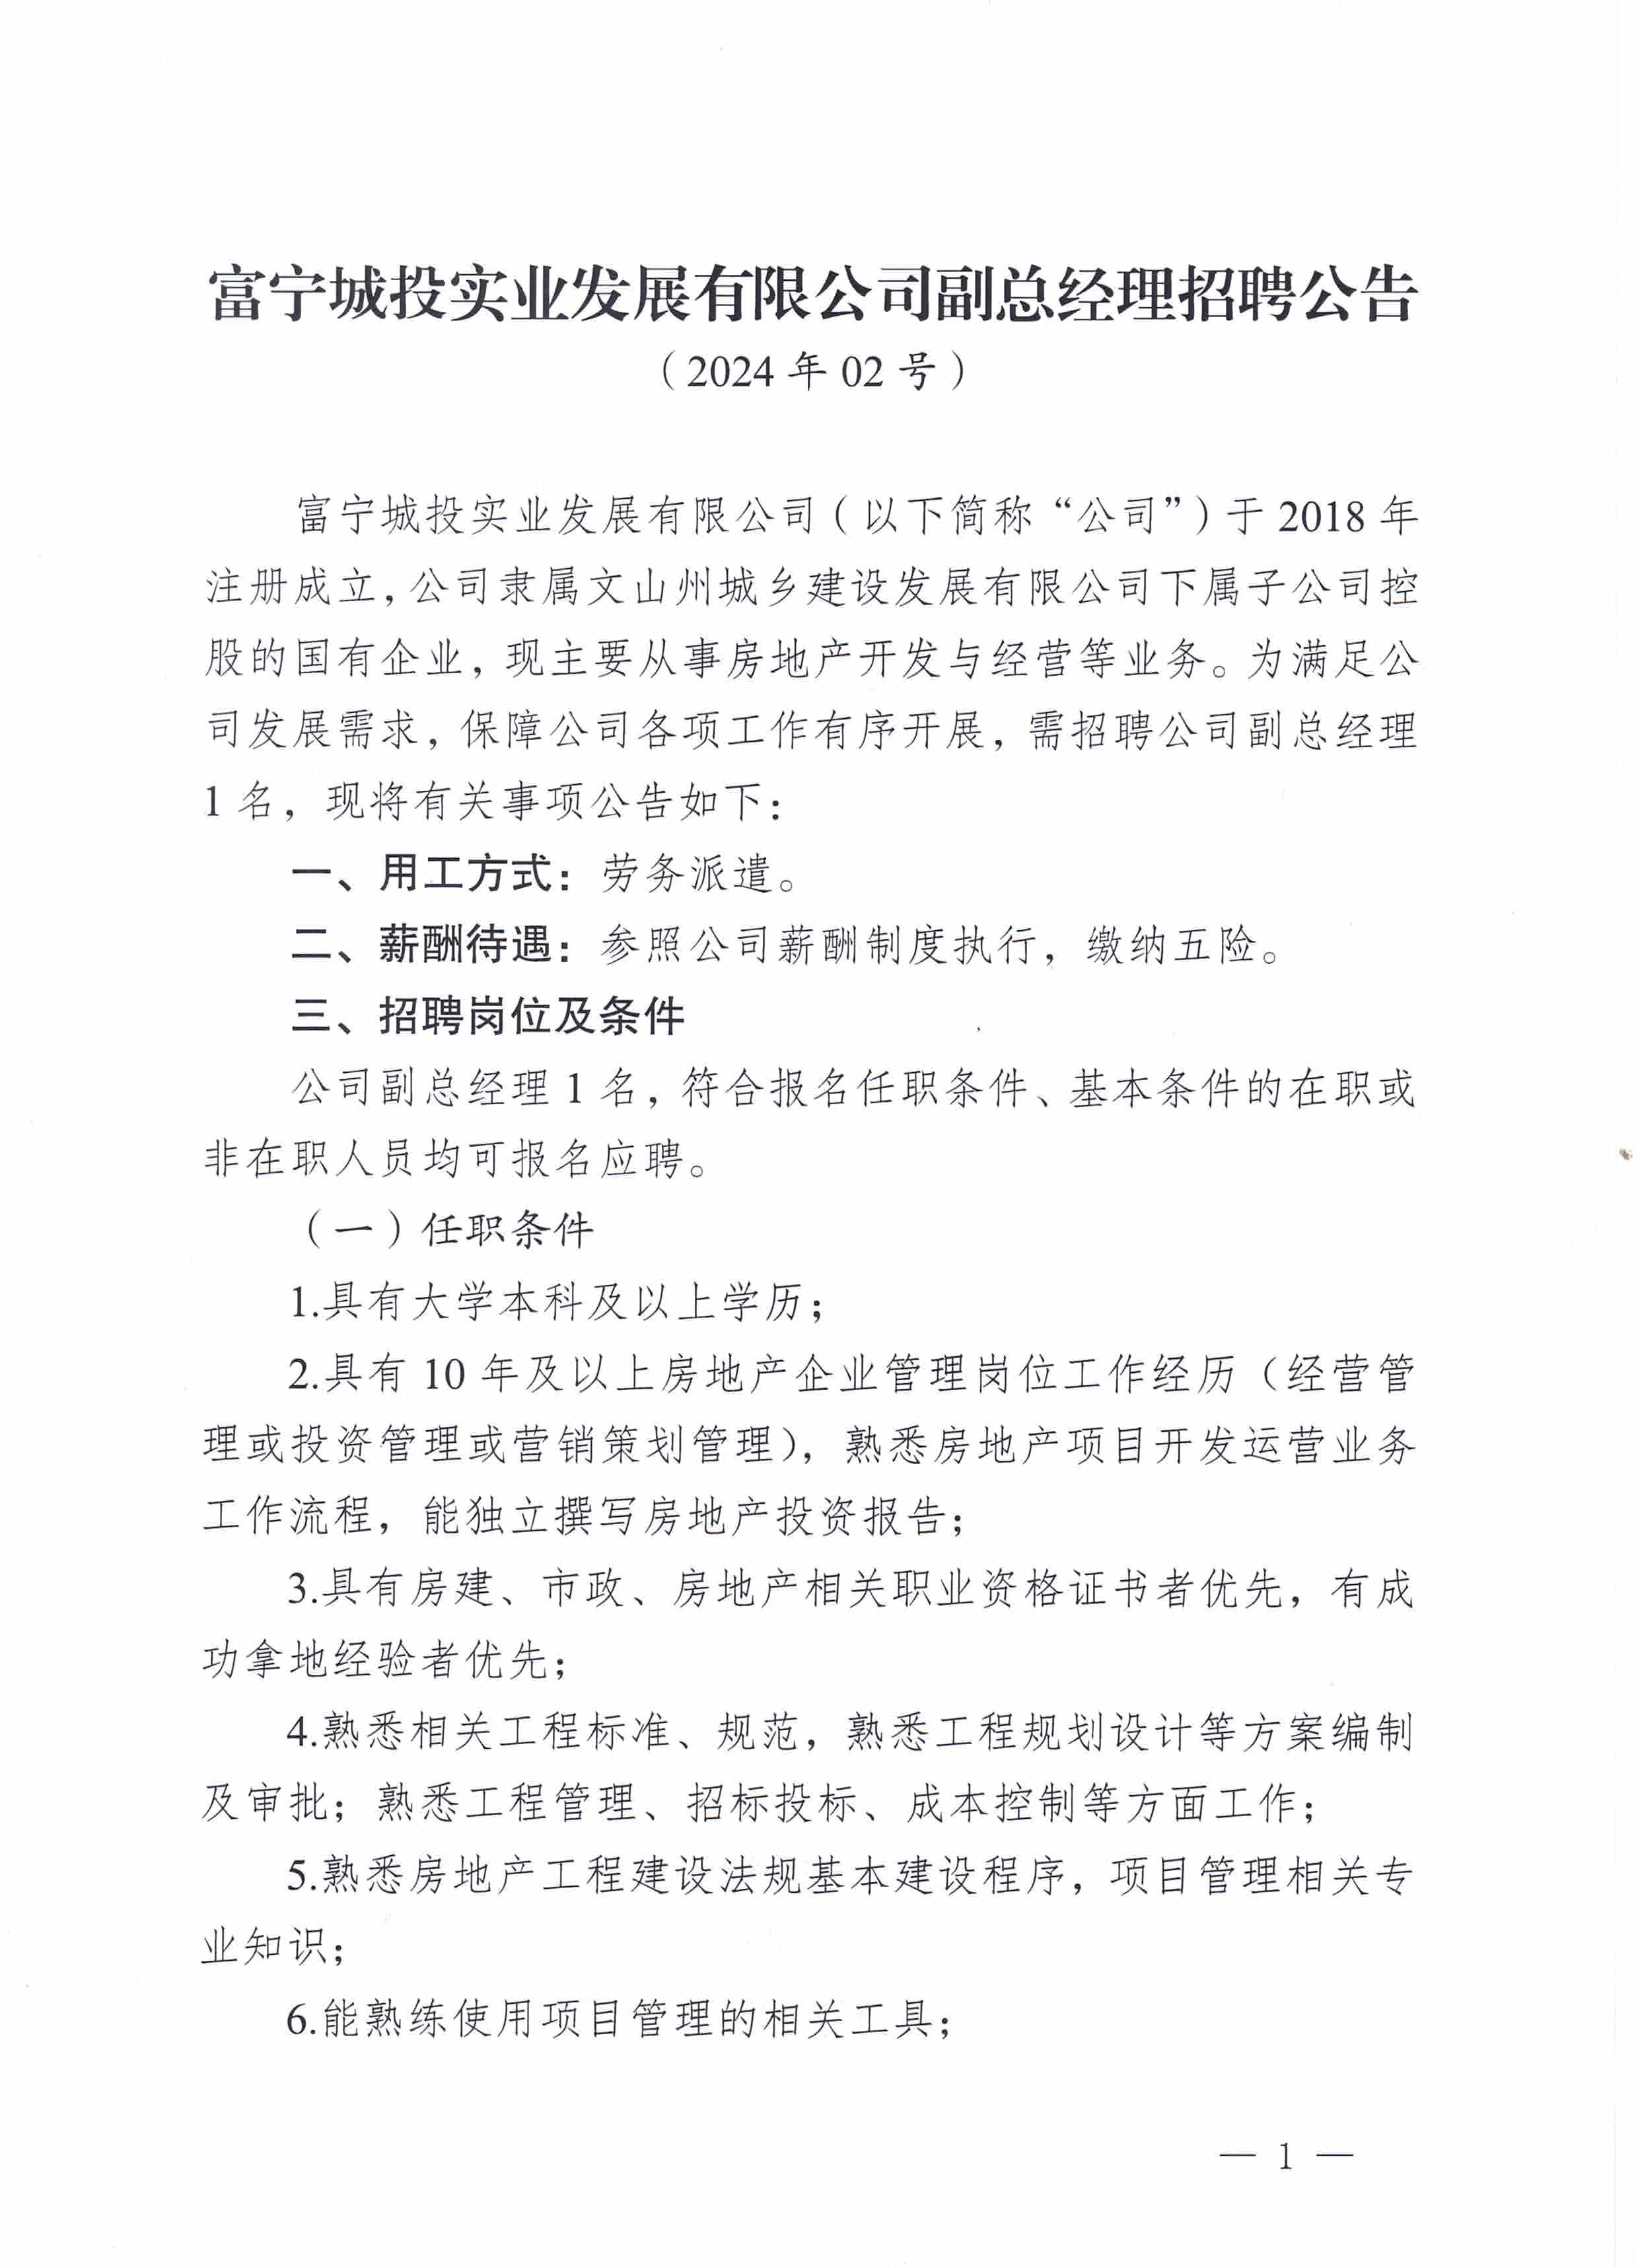 富宁城投实业发展有限公司副总经理招聘公告（02号）(2)_页面_1.jpg